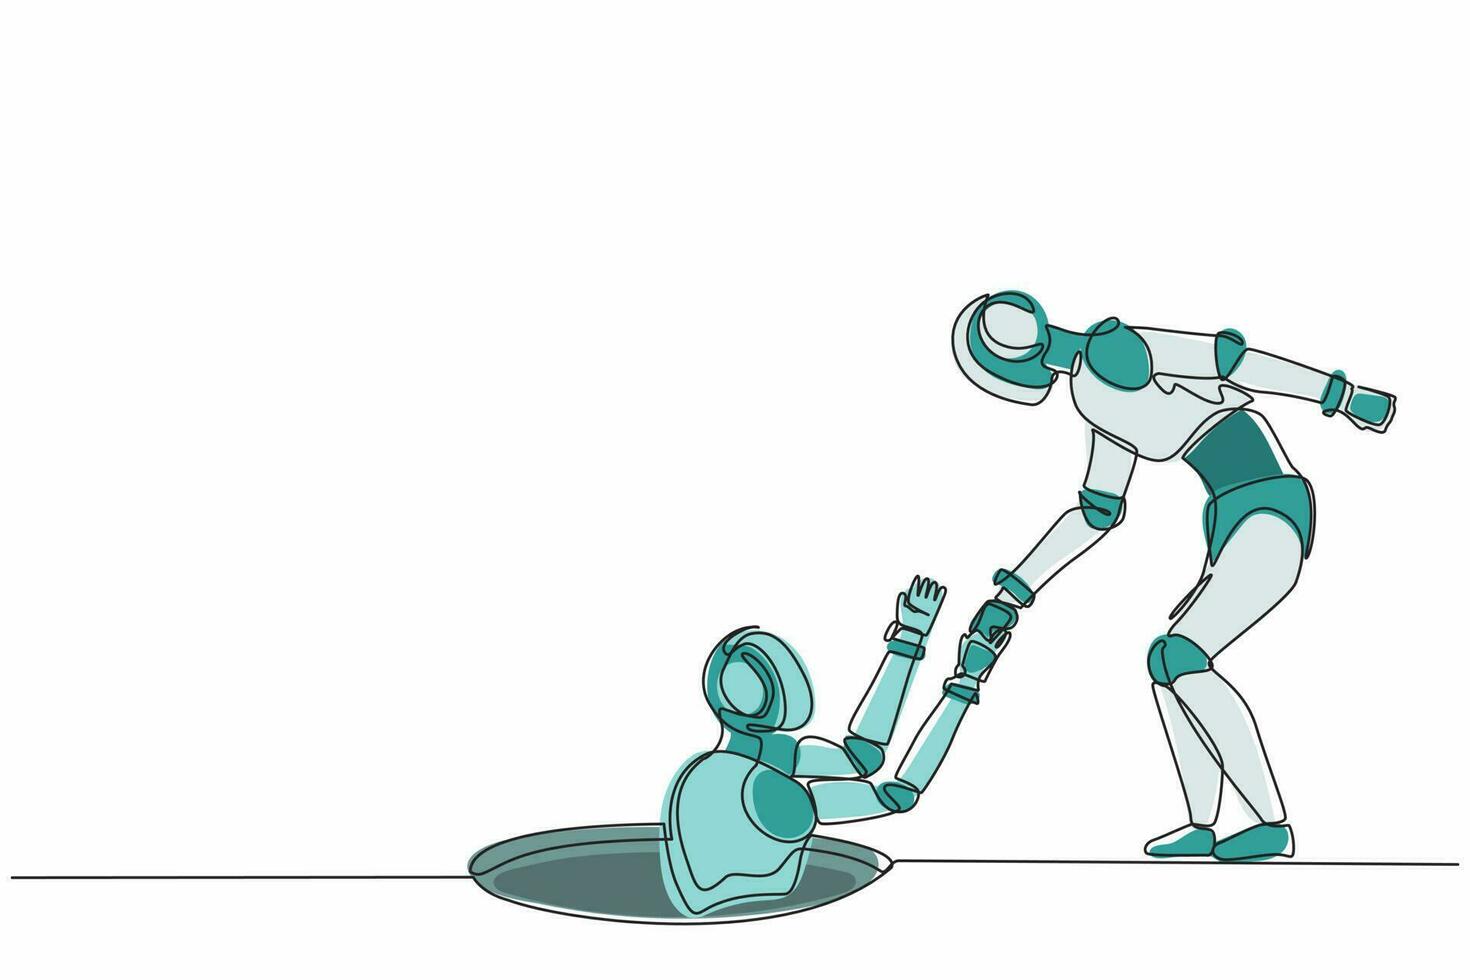 fortlaufender einzeiliger Roboter, der seinem Freund hilft, indem er ihn aus dem Loch holt. humanoider Roboter kybernetischer Organismus. zukünftiges robotikentwicklungskonzept. Vektorgrafik-Illustration für einzeiliges Design vektor